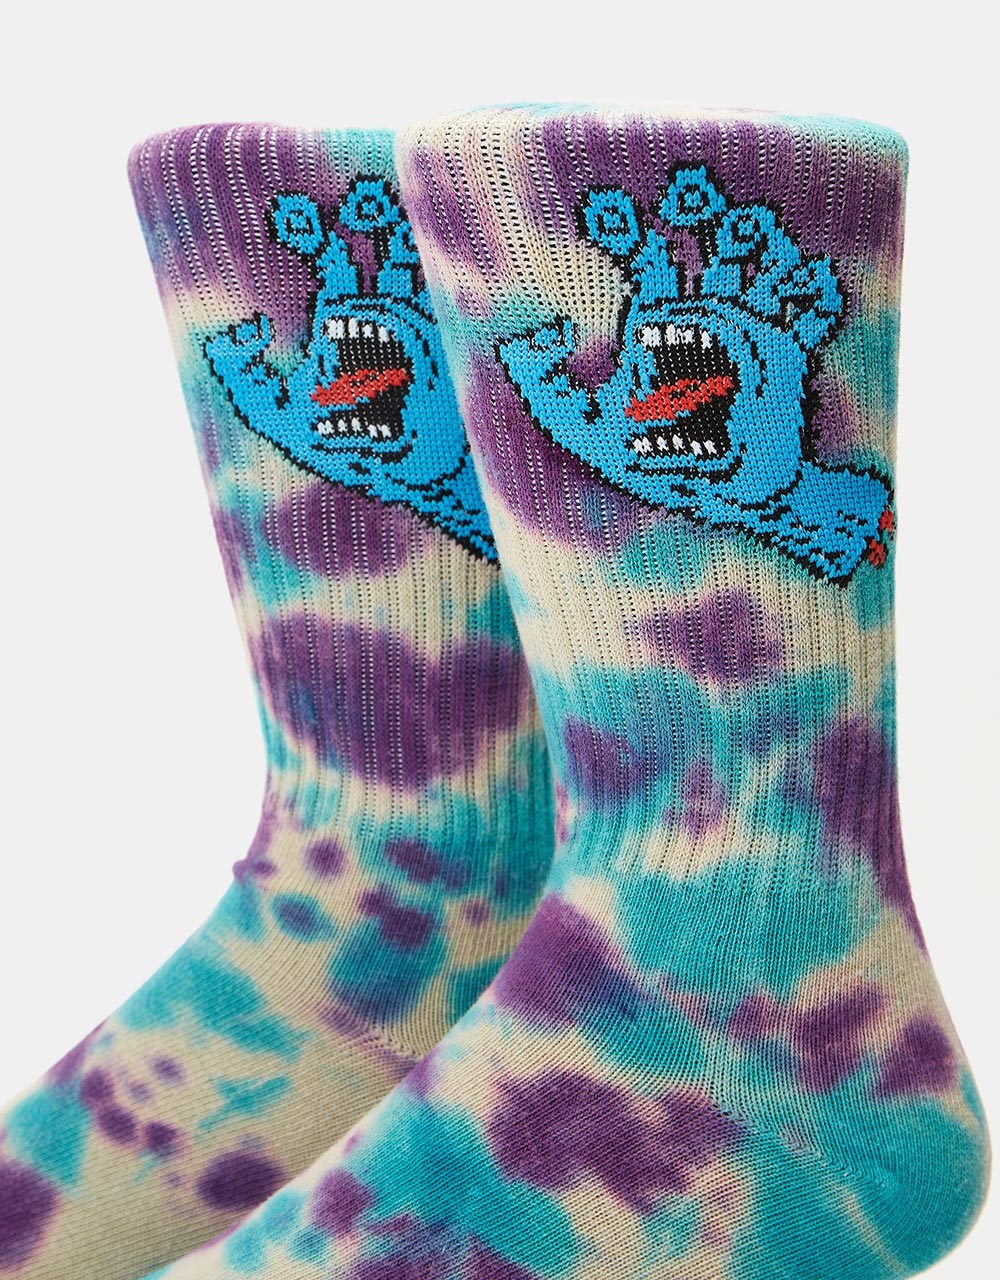 Santa Cruz Screaming Hand Tie Dye Sock - Oat/Purple/Aqua Tie Dye